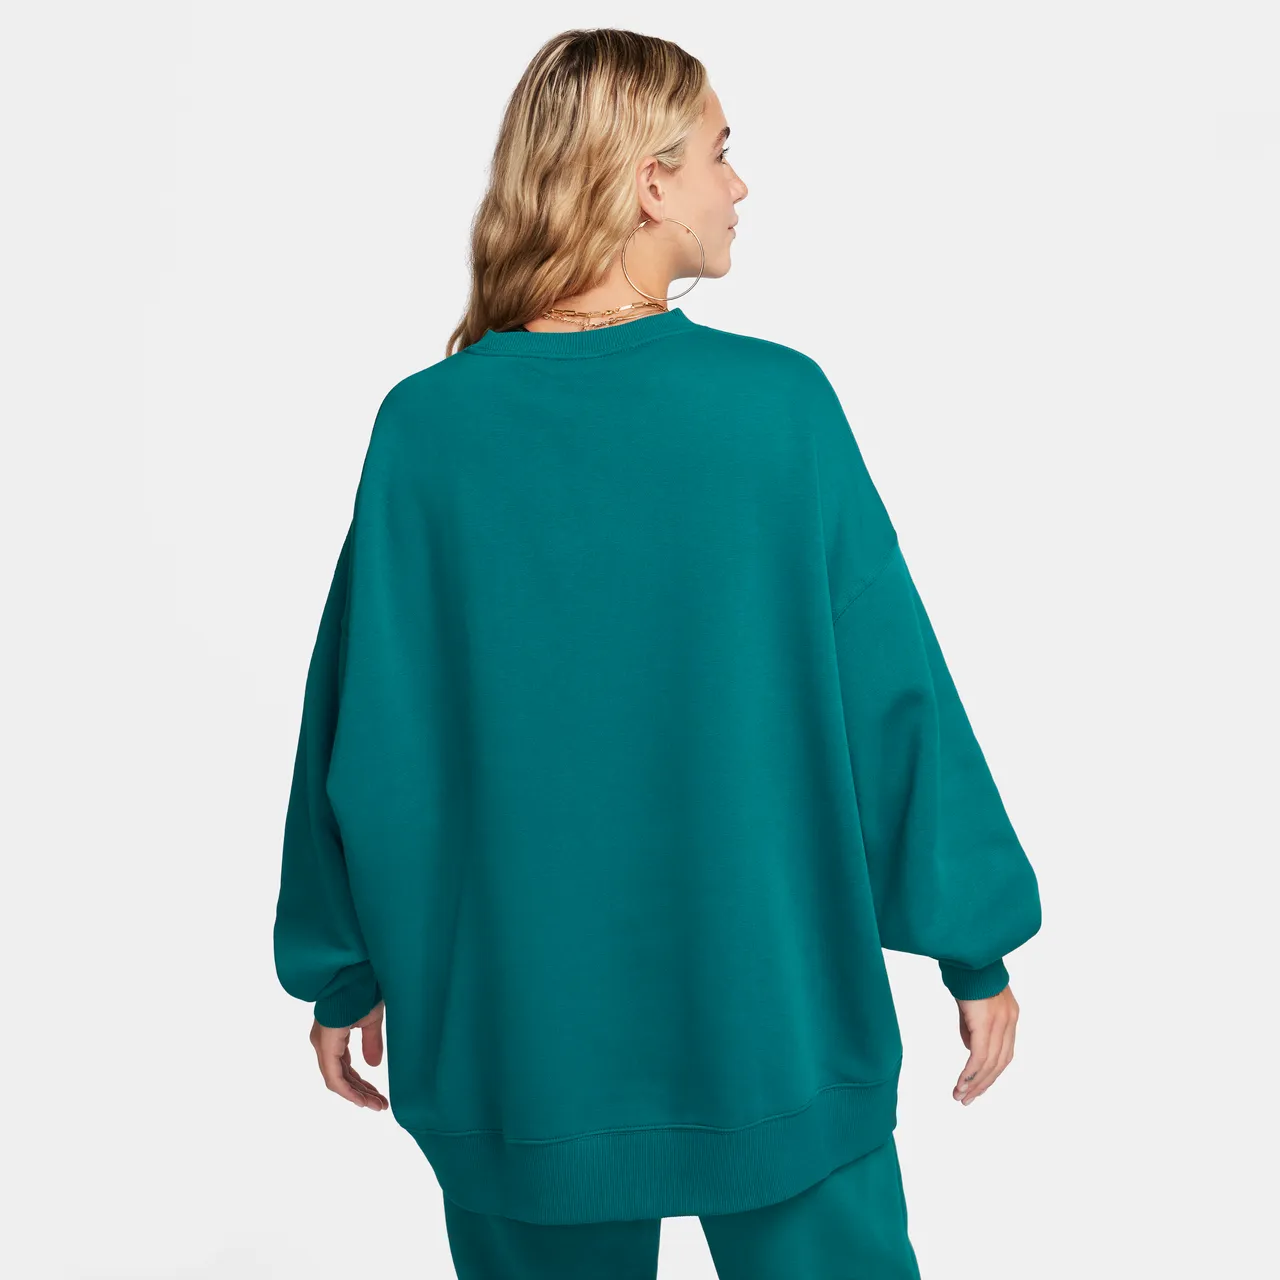 Nike Sportswear Women's Oversized Fleece Crew-Neck Sweatshirt - Green - Polyester